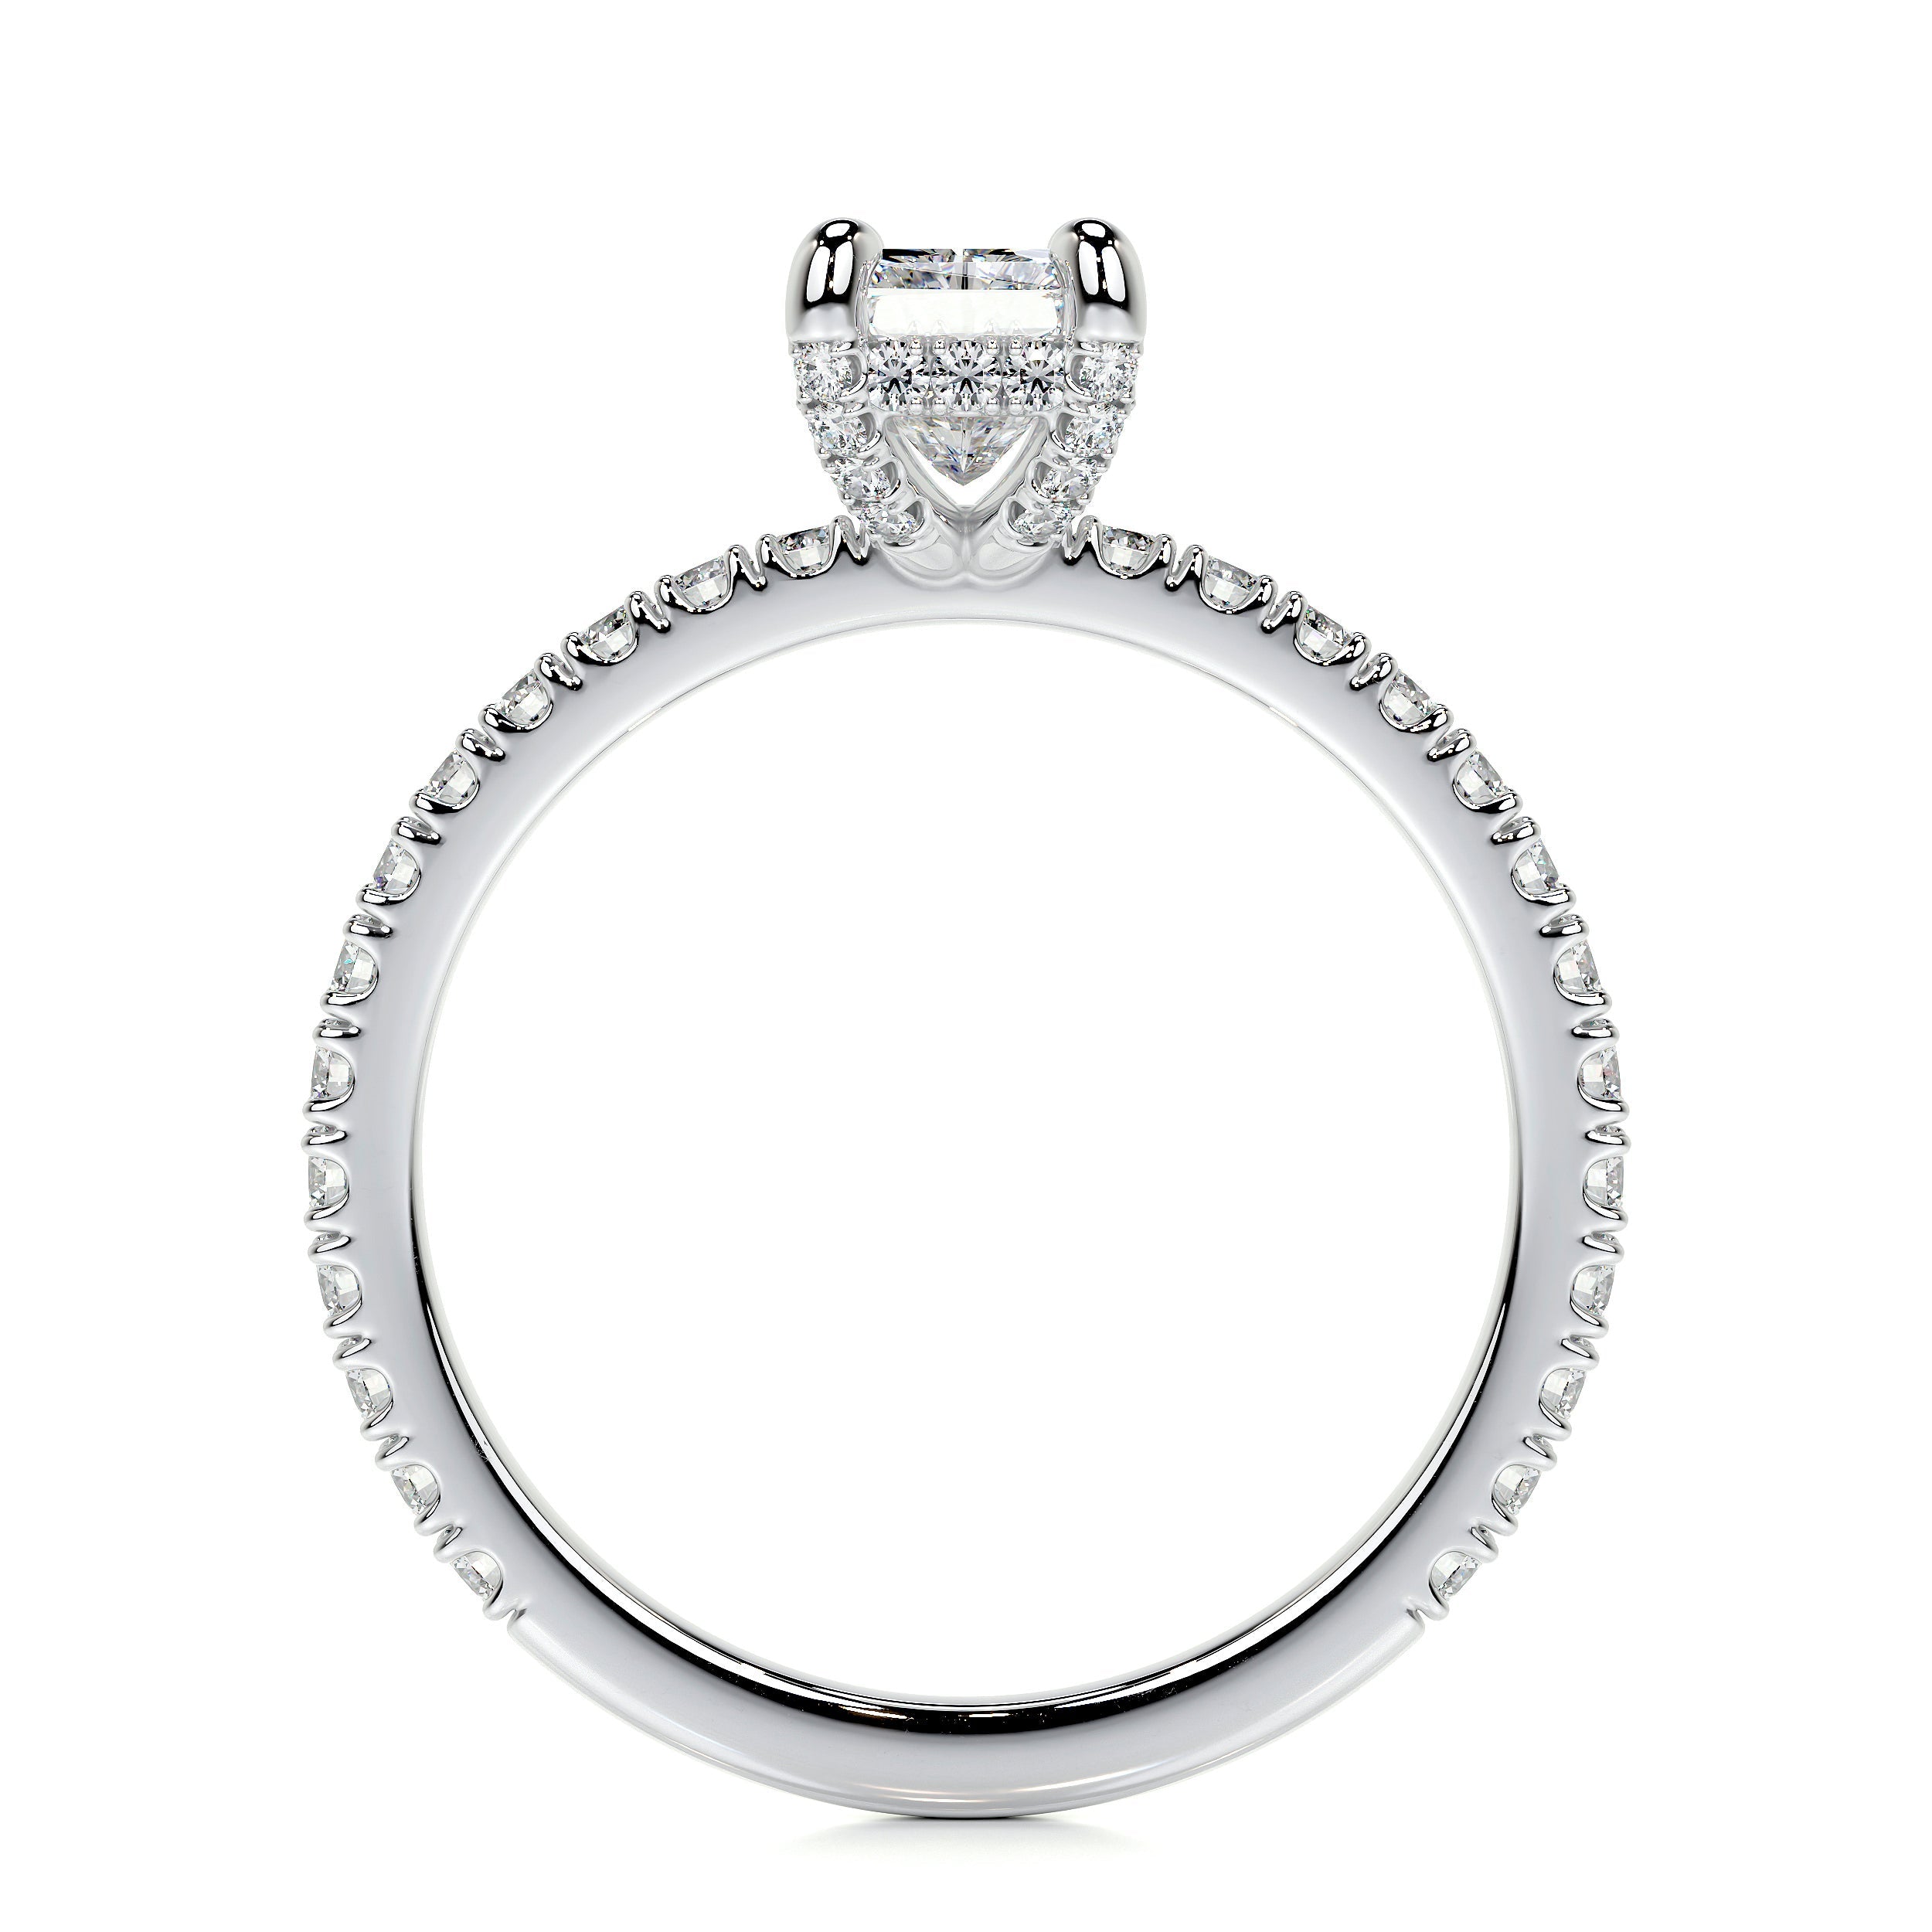 Deborah Lab Grown Diamond Ring   (1.5 Carat) -14K White Gold